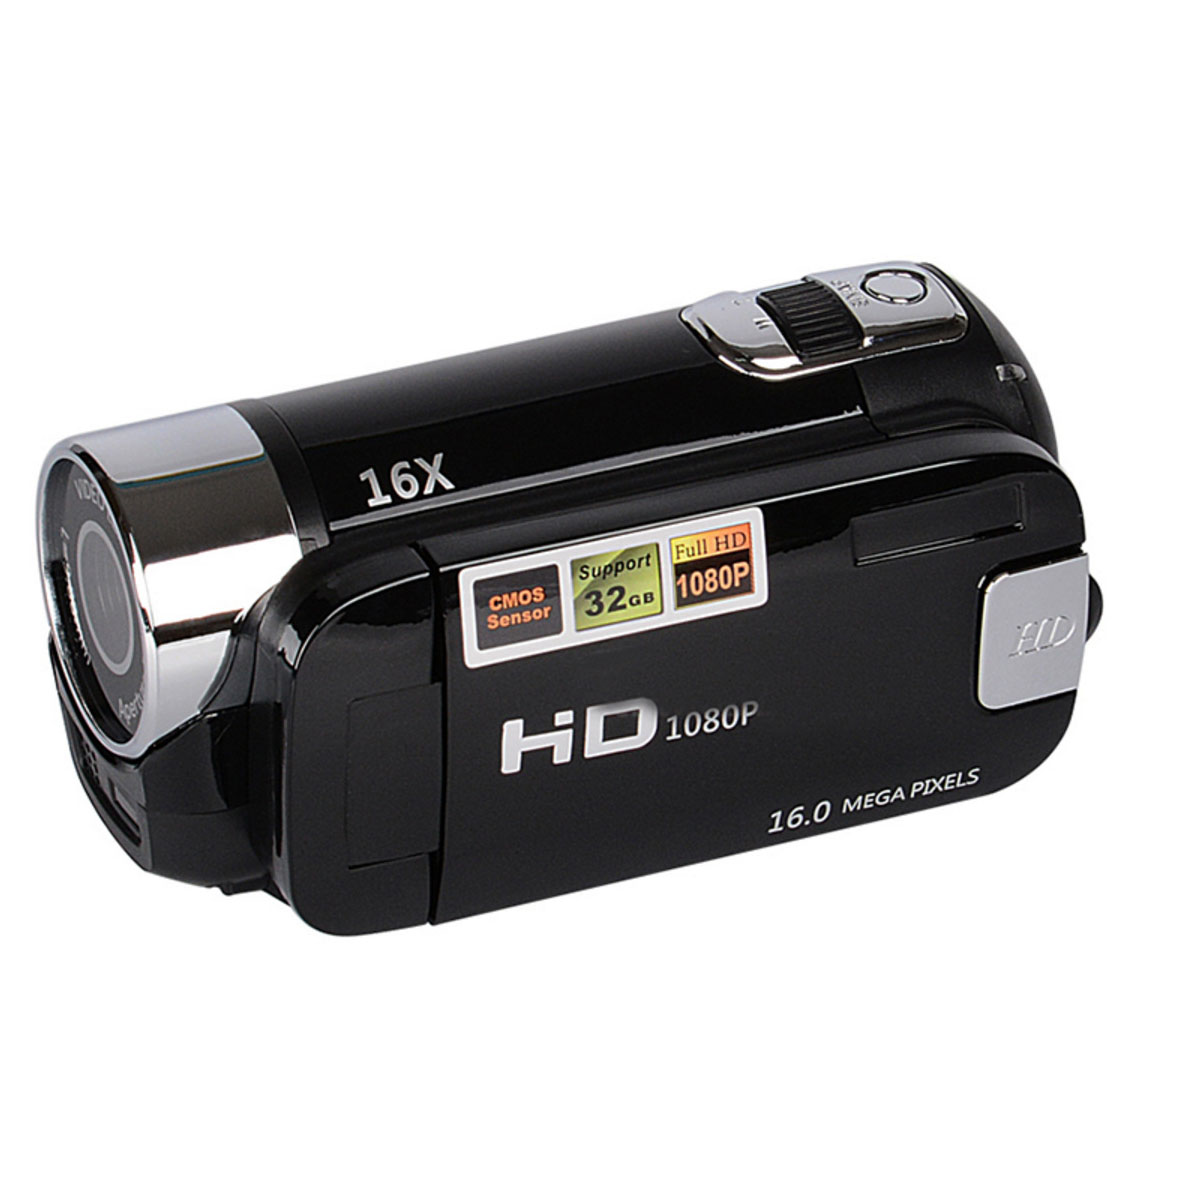 SYNTEK Videokamera Camcorder 1080P FHD 270° drehbarem und Zoom Display mit Camcorder opt. Zoom 16-fachem